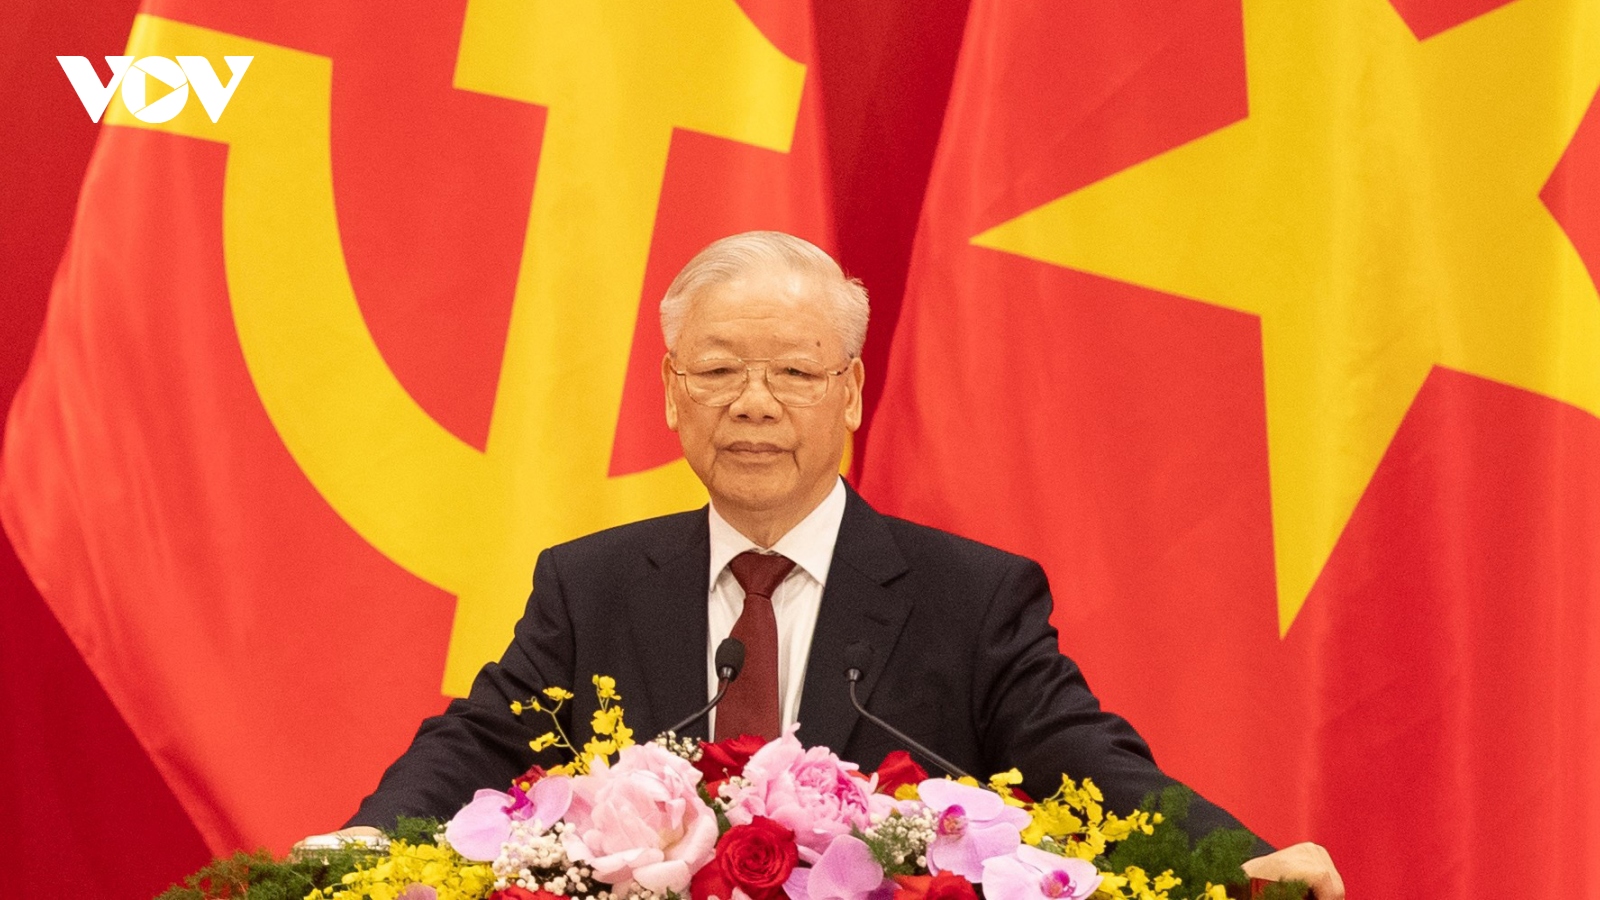 Chuyên gia Trung Quốc: Tổng Bí thư Nguyễn Phú Trọng là vị lãnh đạo uy tín, liêm khiết